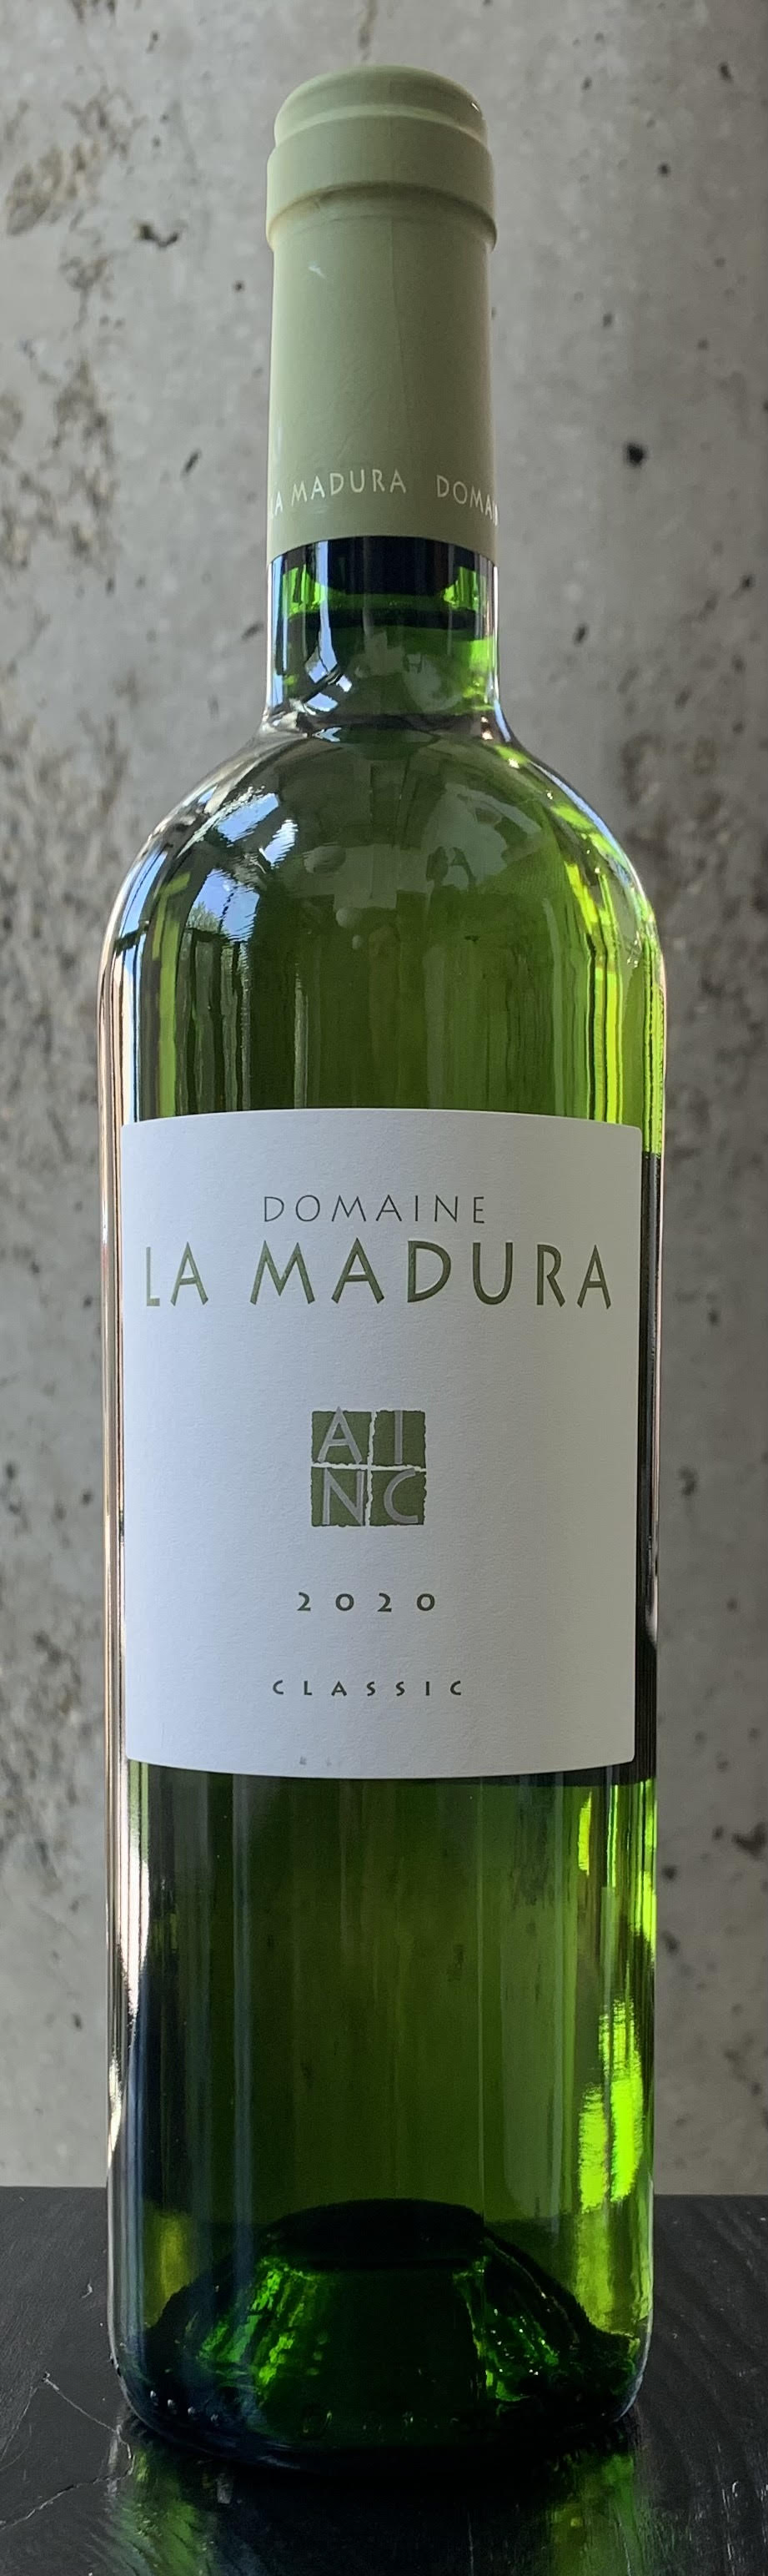 Domaine La Madura "Classic" Blanc Vin de Pays d'Oc '20